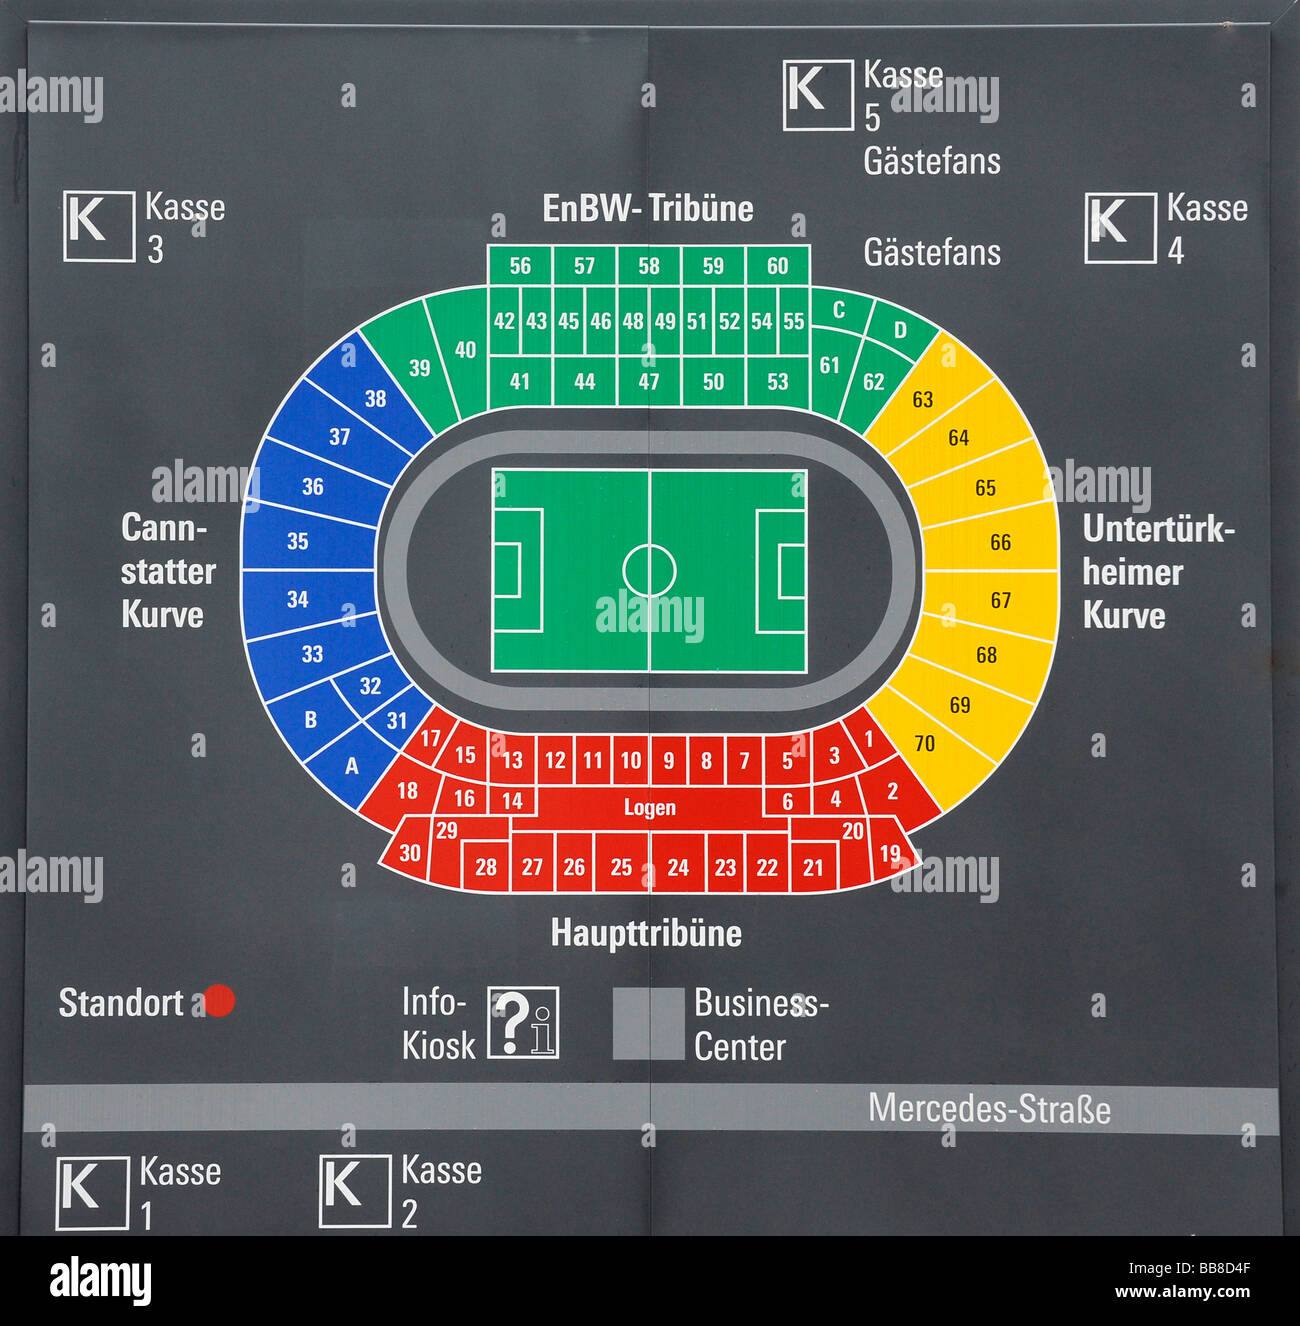 Infotafel, Block und Sitzgelegenheiten planen, Mercedes-Benz Arena Stuttgart,  Baden-Württemberg, Deutschland, Europa Stockfotografie - Alamy